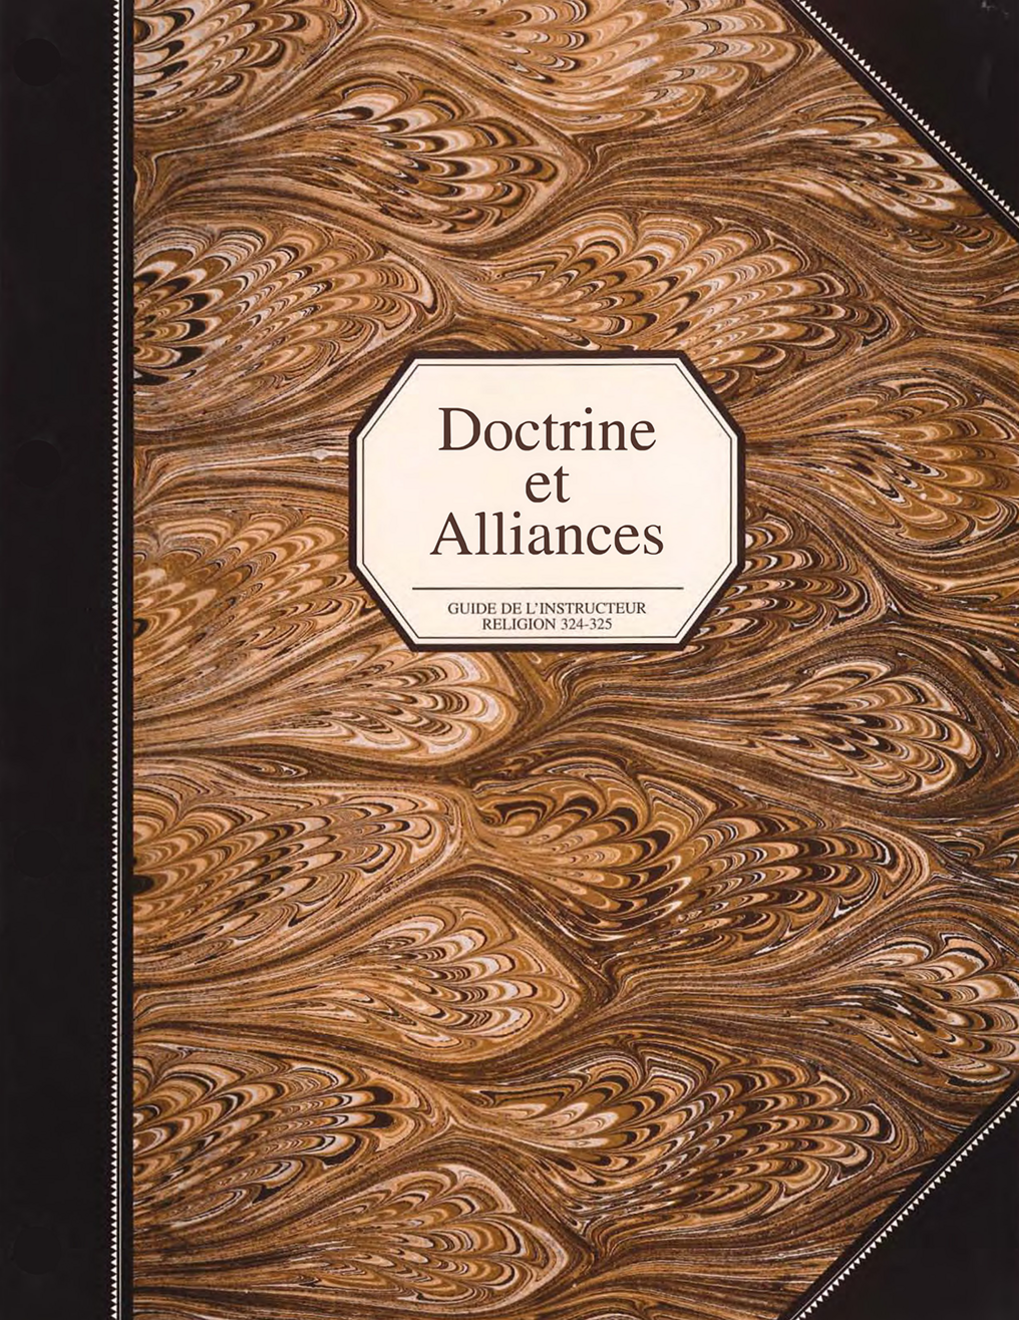 Doctrine et Alliances, guide de l’instructeur (Religion 324-325)